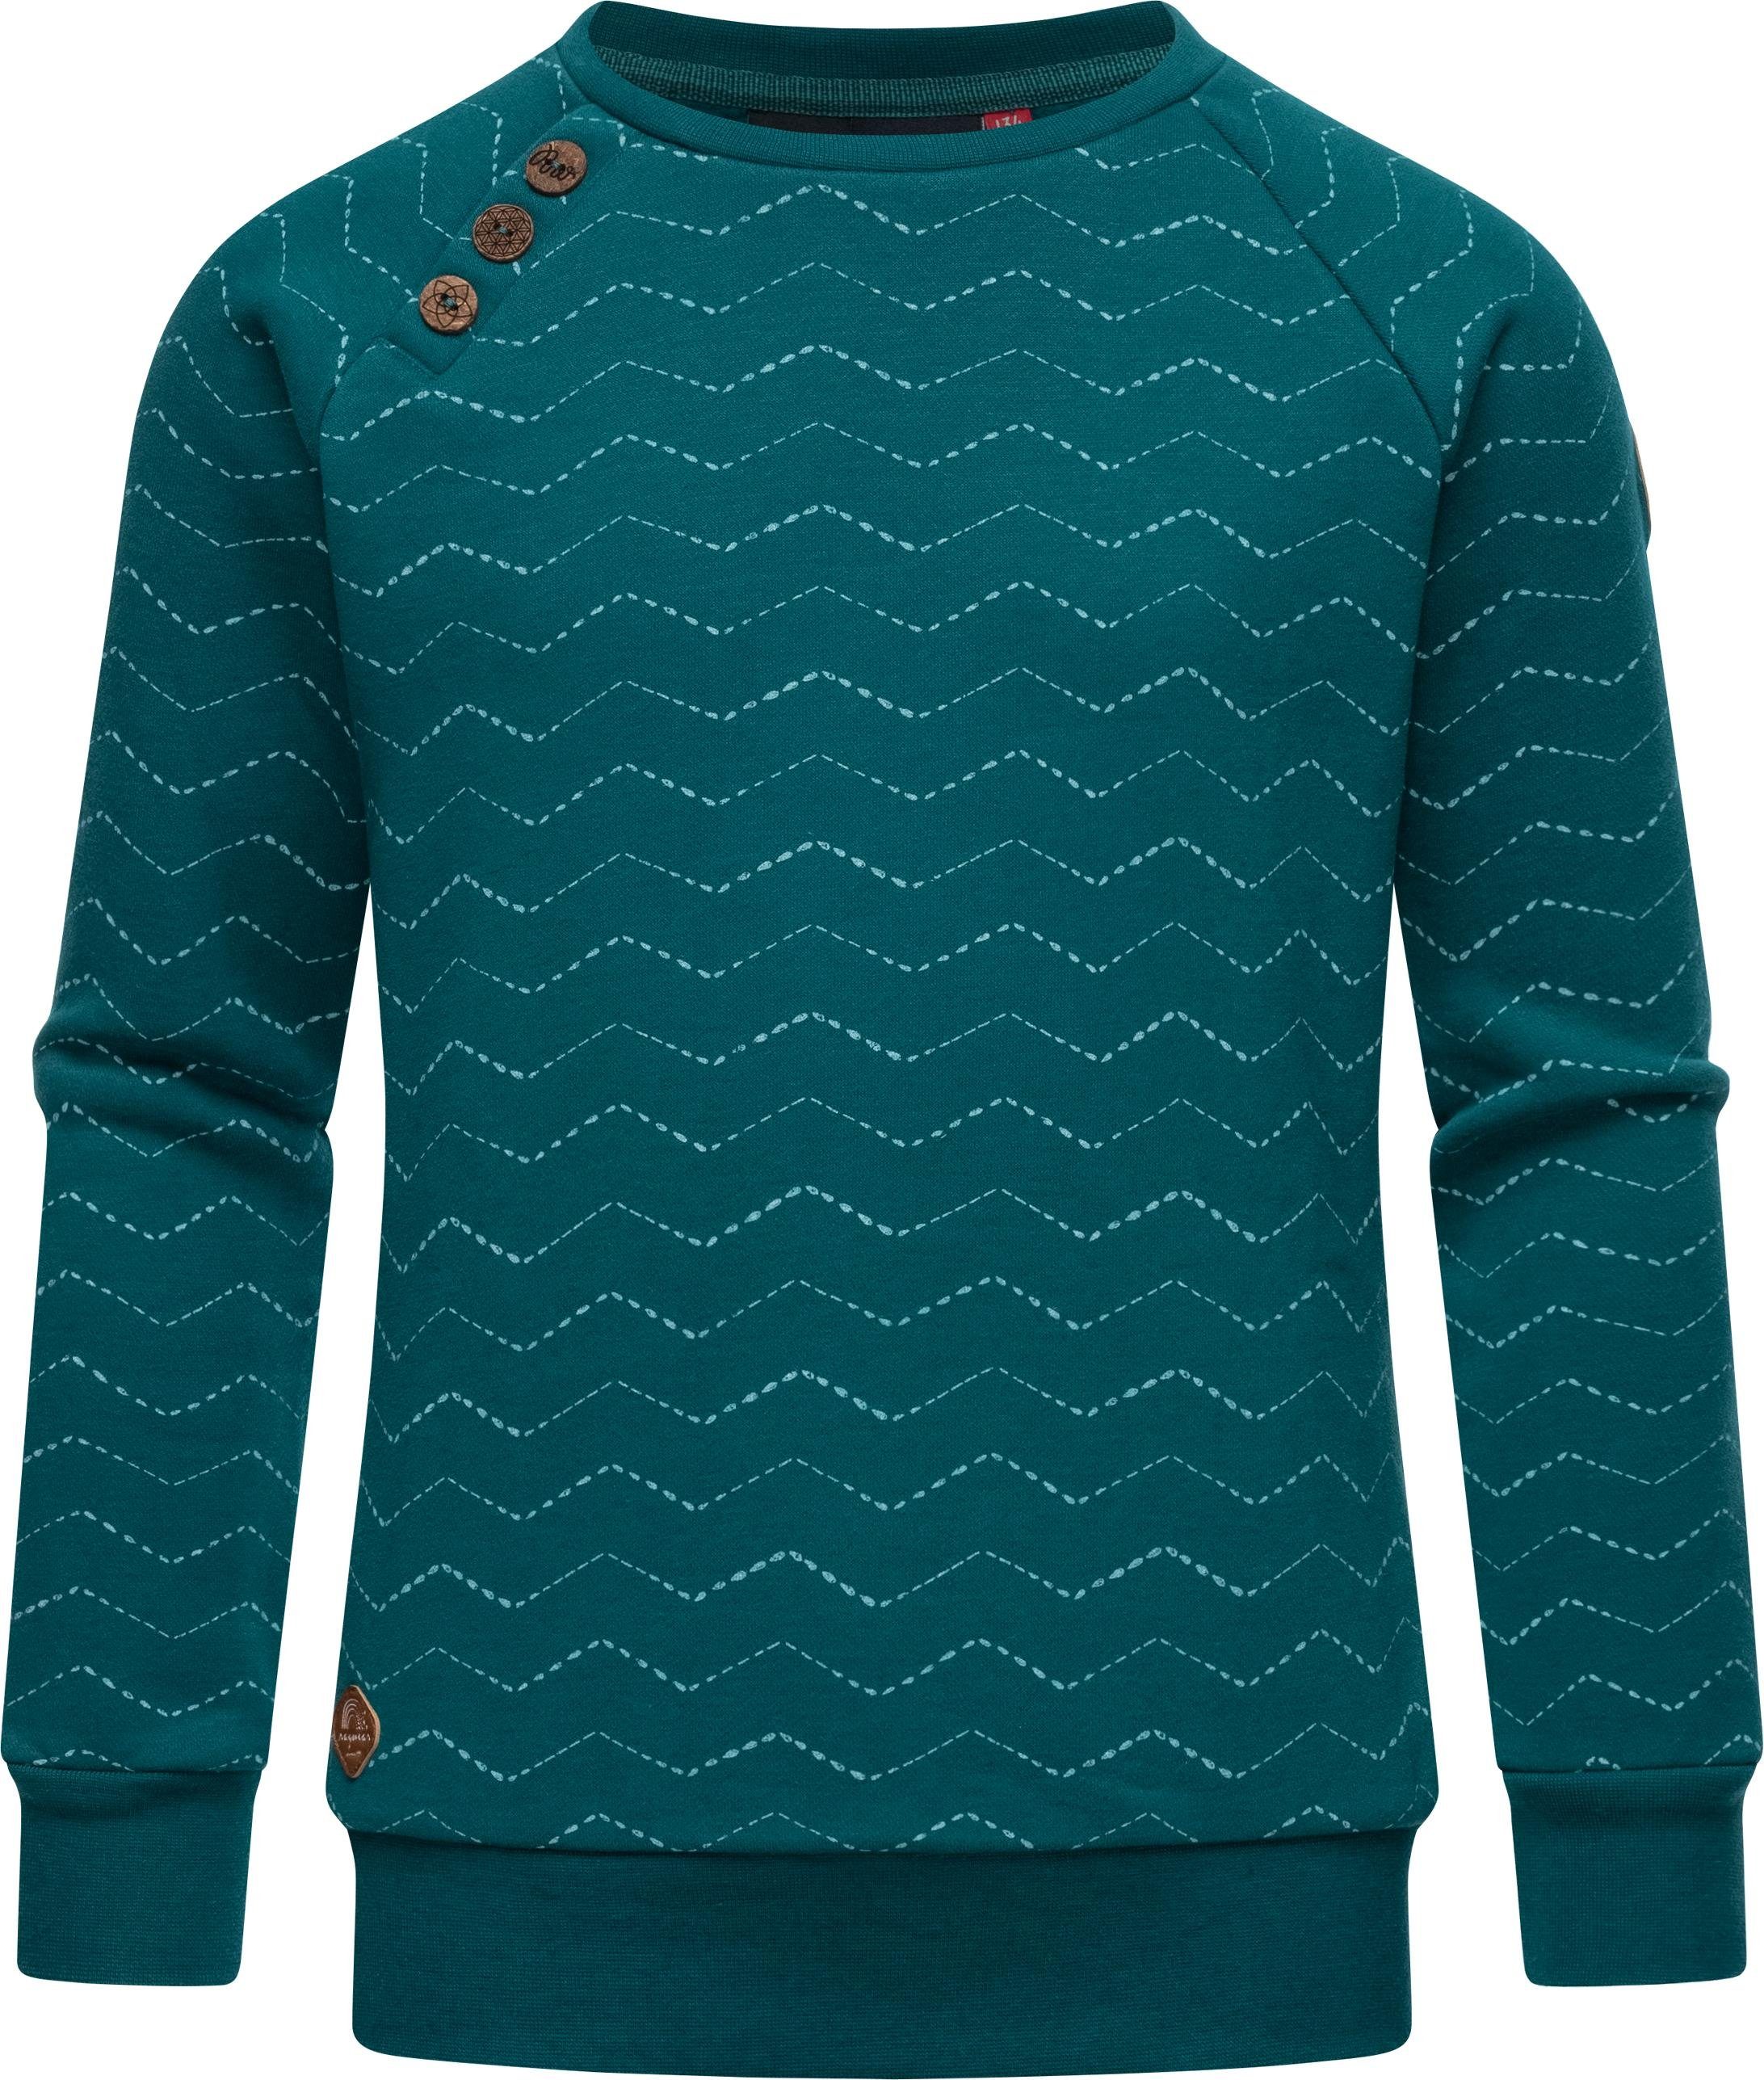 Ragwear Sweater Darinka Zig Zag stylisches Mädchen Sweatshirt mit Zick-Zack-Muster aquablau